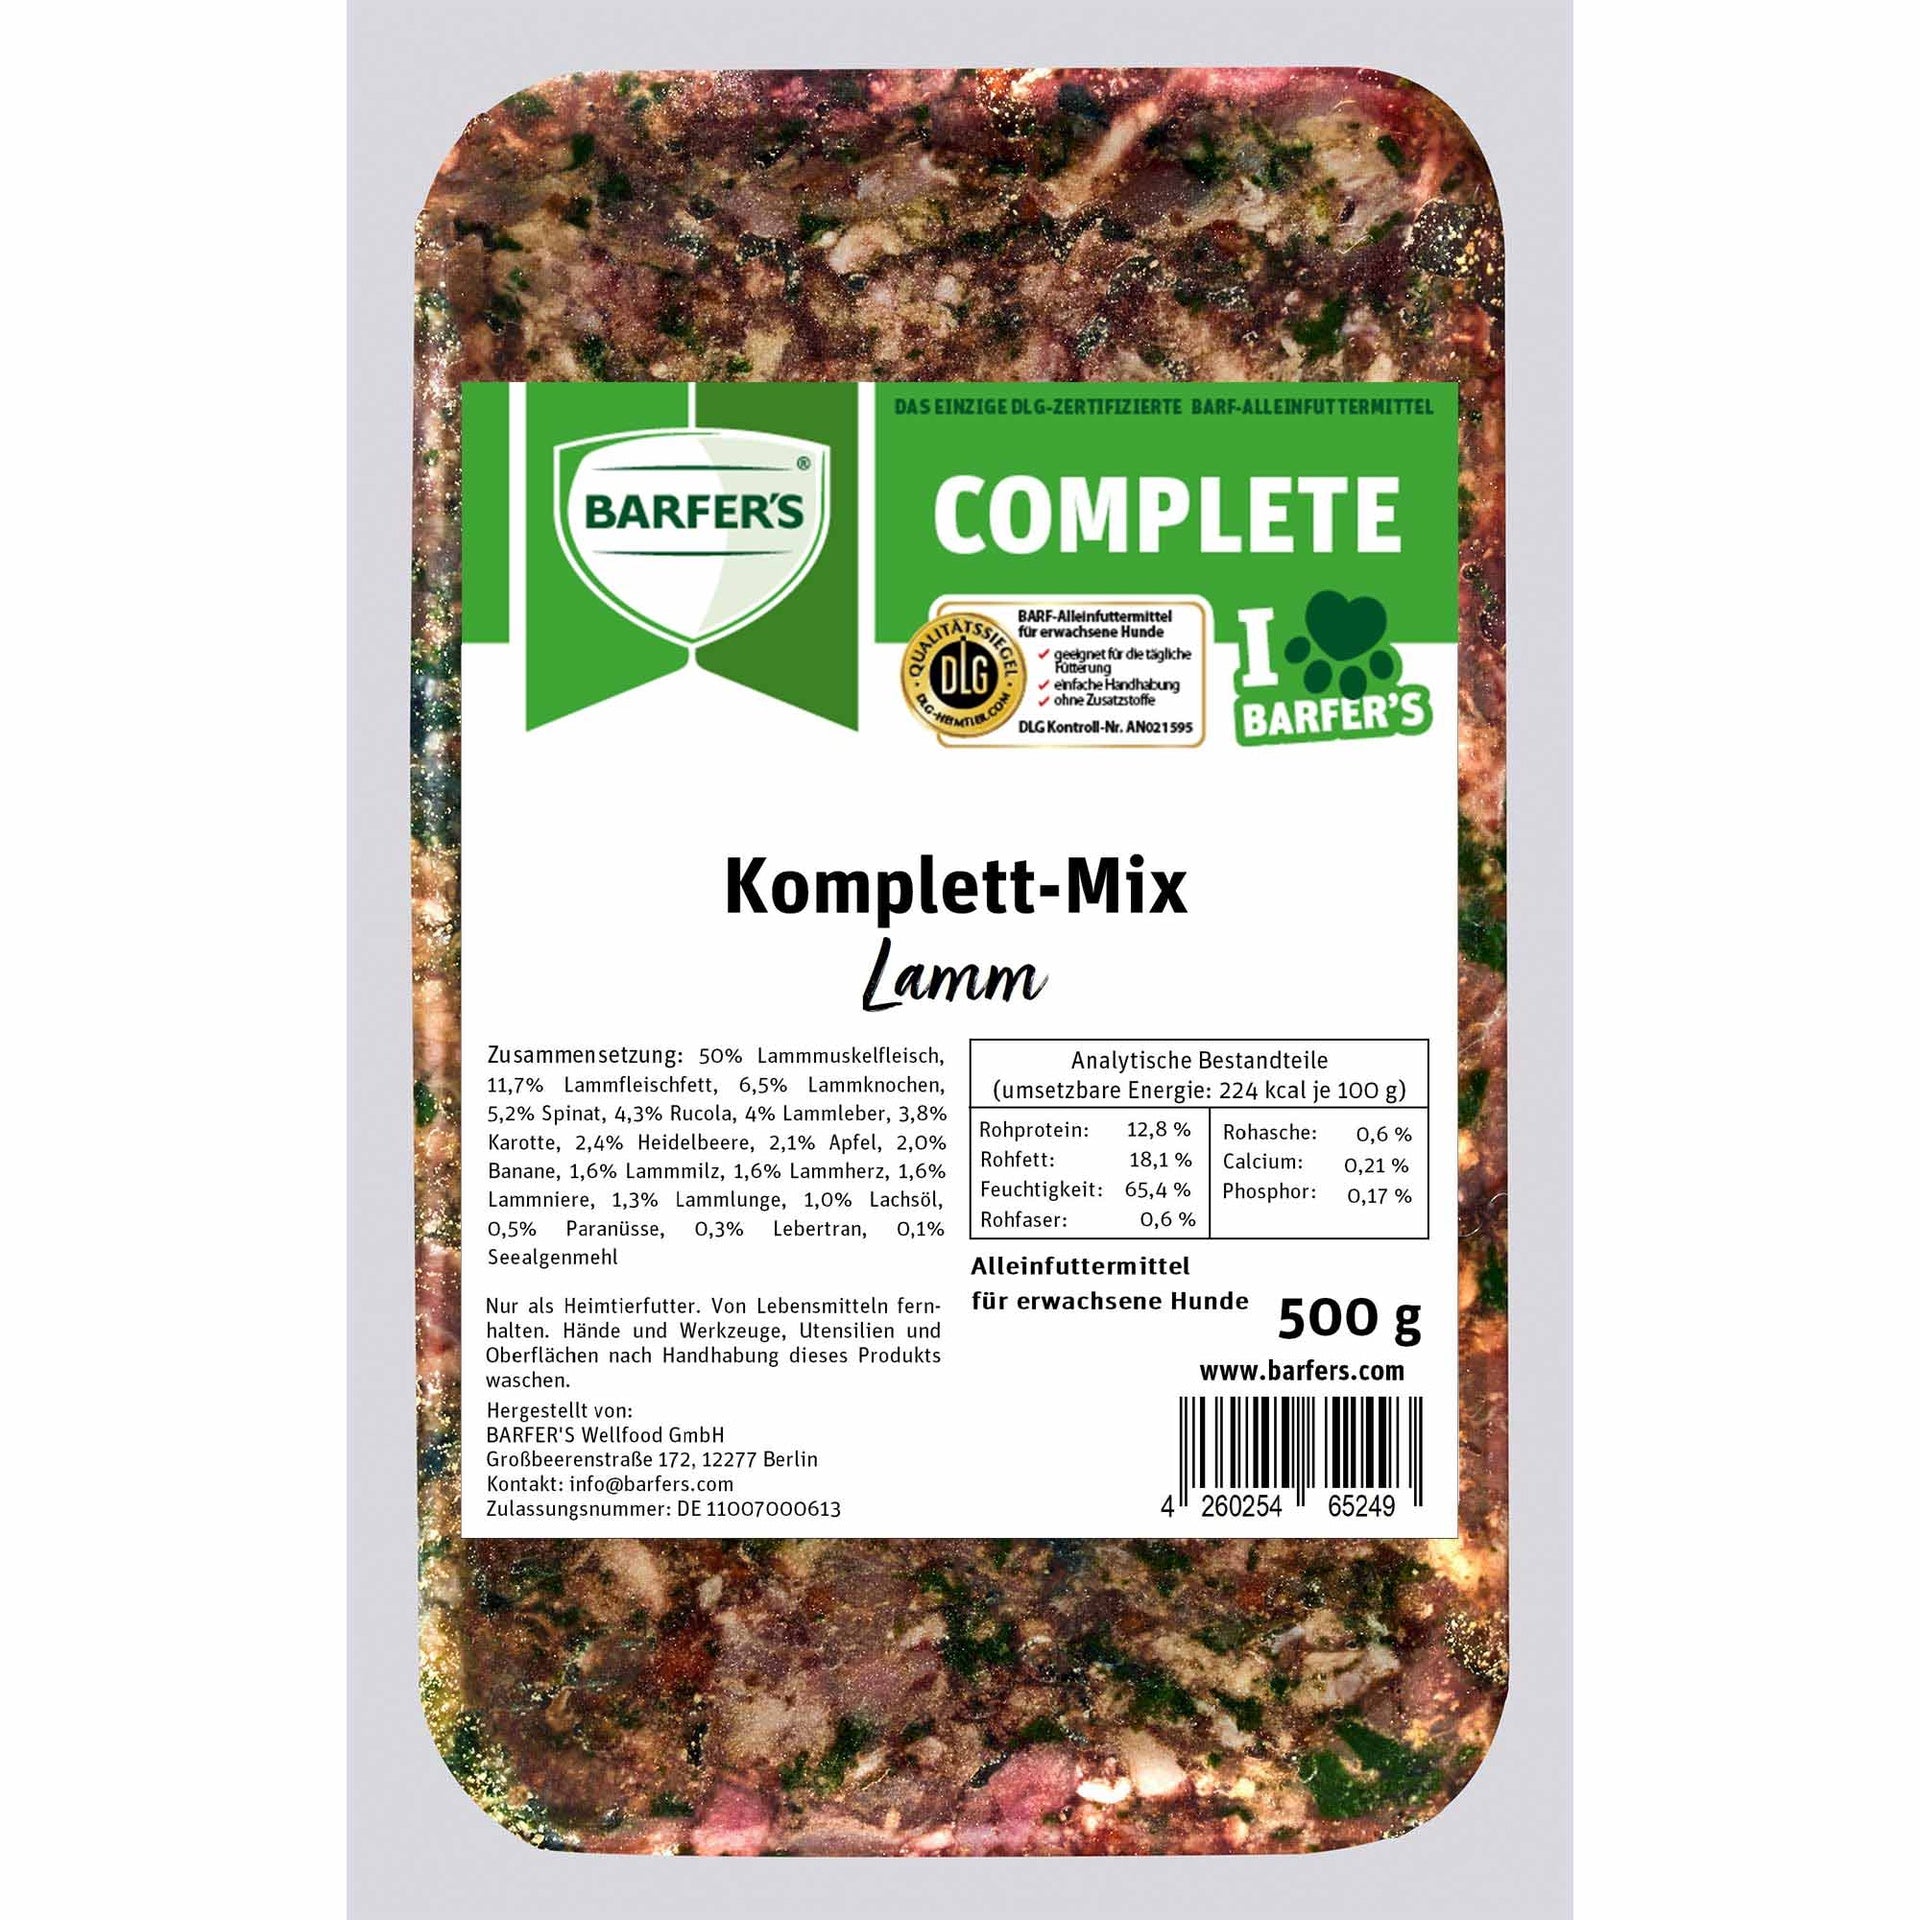 Komplett-Mix Lamm